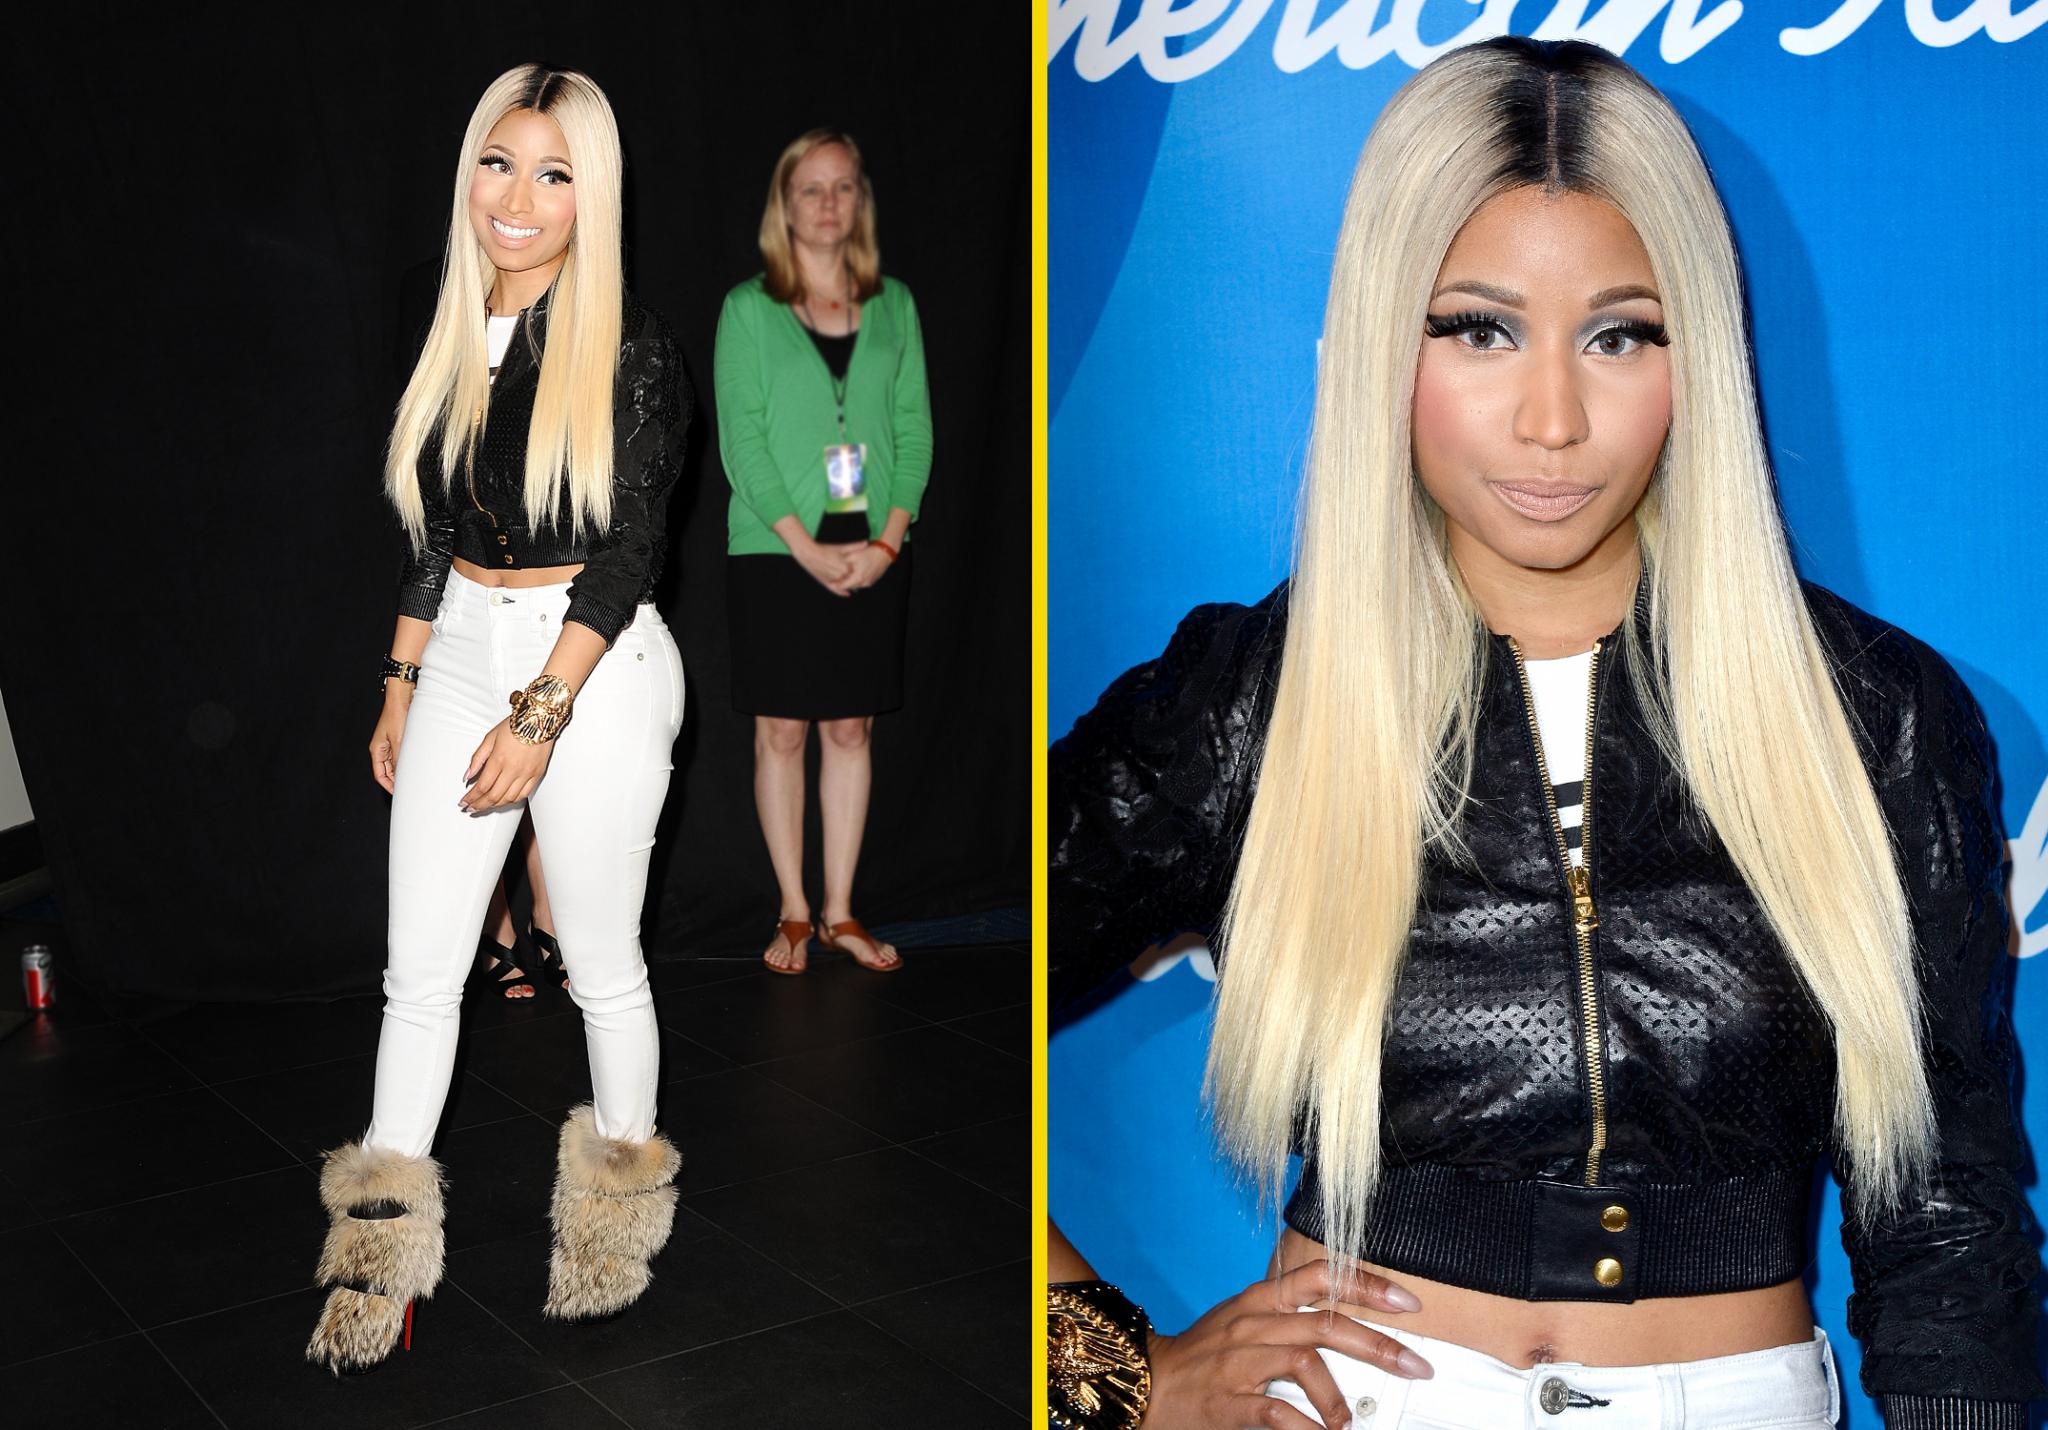 Nicki Minaj & More to Perform at 2013 BET Awards